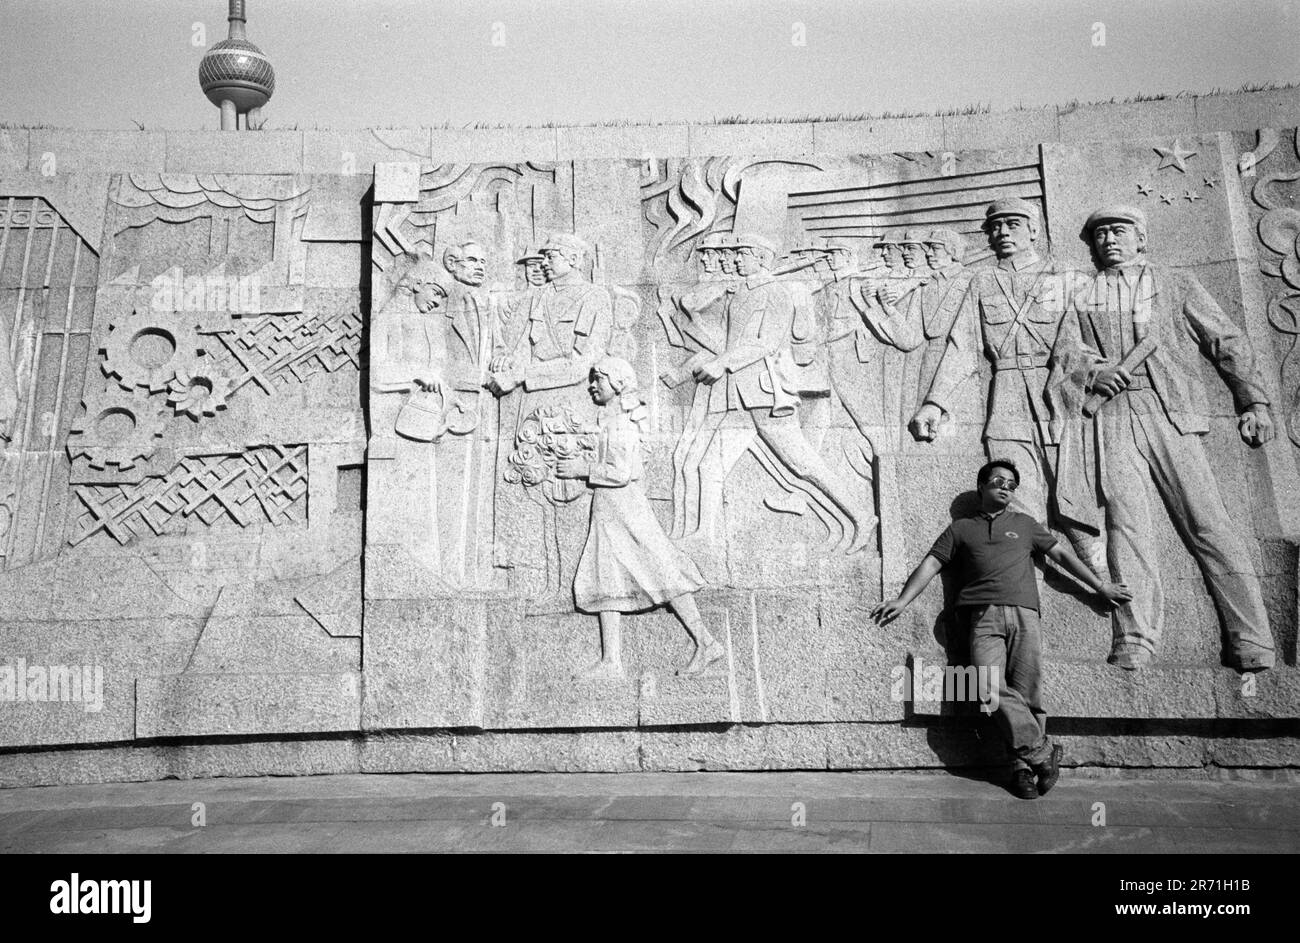 Shanghai China 2000. Das Denkmal für die Helden der Völker in den Huangpu-Gärten wurde am 31. Dezember 1988 begonnen und am 27. Mai 1994, dem 45. Jahrestag der Befreiung Shanghais, fertiggestellt. Ein dreiteiliger Betonpylon erhebt sich aus einer versunkenen Arena, in der sich ein 120 Meter langer Fries befindet. In sieben Abteilungen gegliedert, erinnert sie an die Kämpfe der Menschen zwischen 1840 und 1949. Hier im letzten Panel begrüßen die Menschen von Shanghai die Volksbefreiungsarmee, die PLA. Dies ist eine beliebte Gegend für Fußball und Sonnenbaden. 2000er Jahre HOMER SYKES Stockfoto